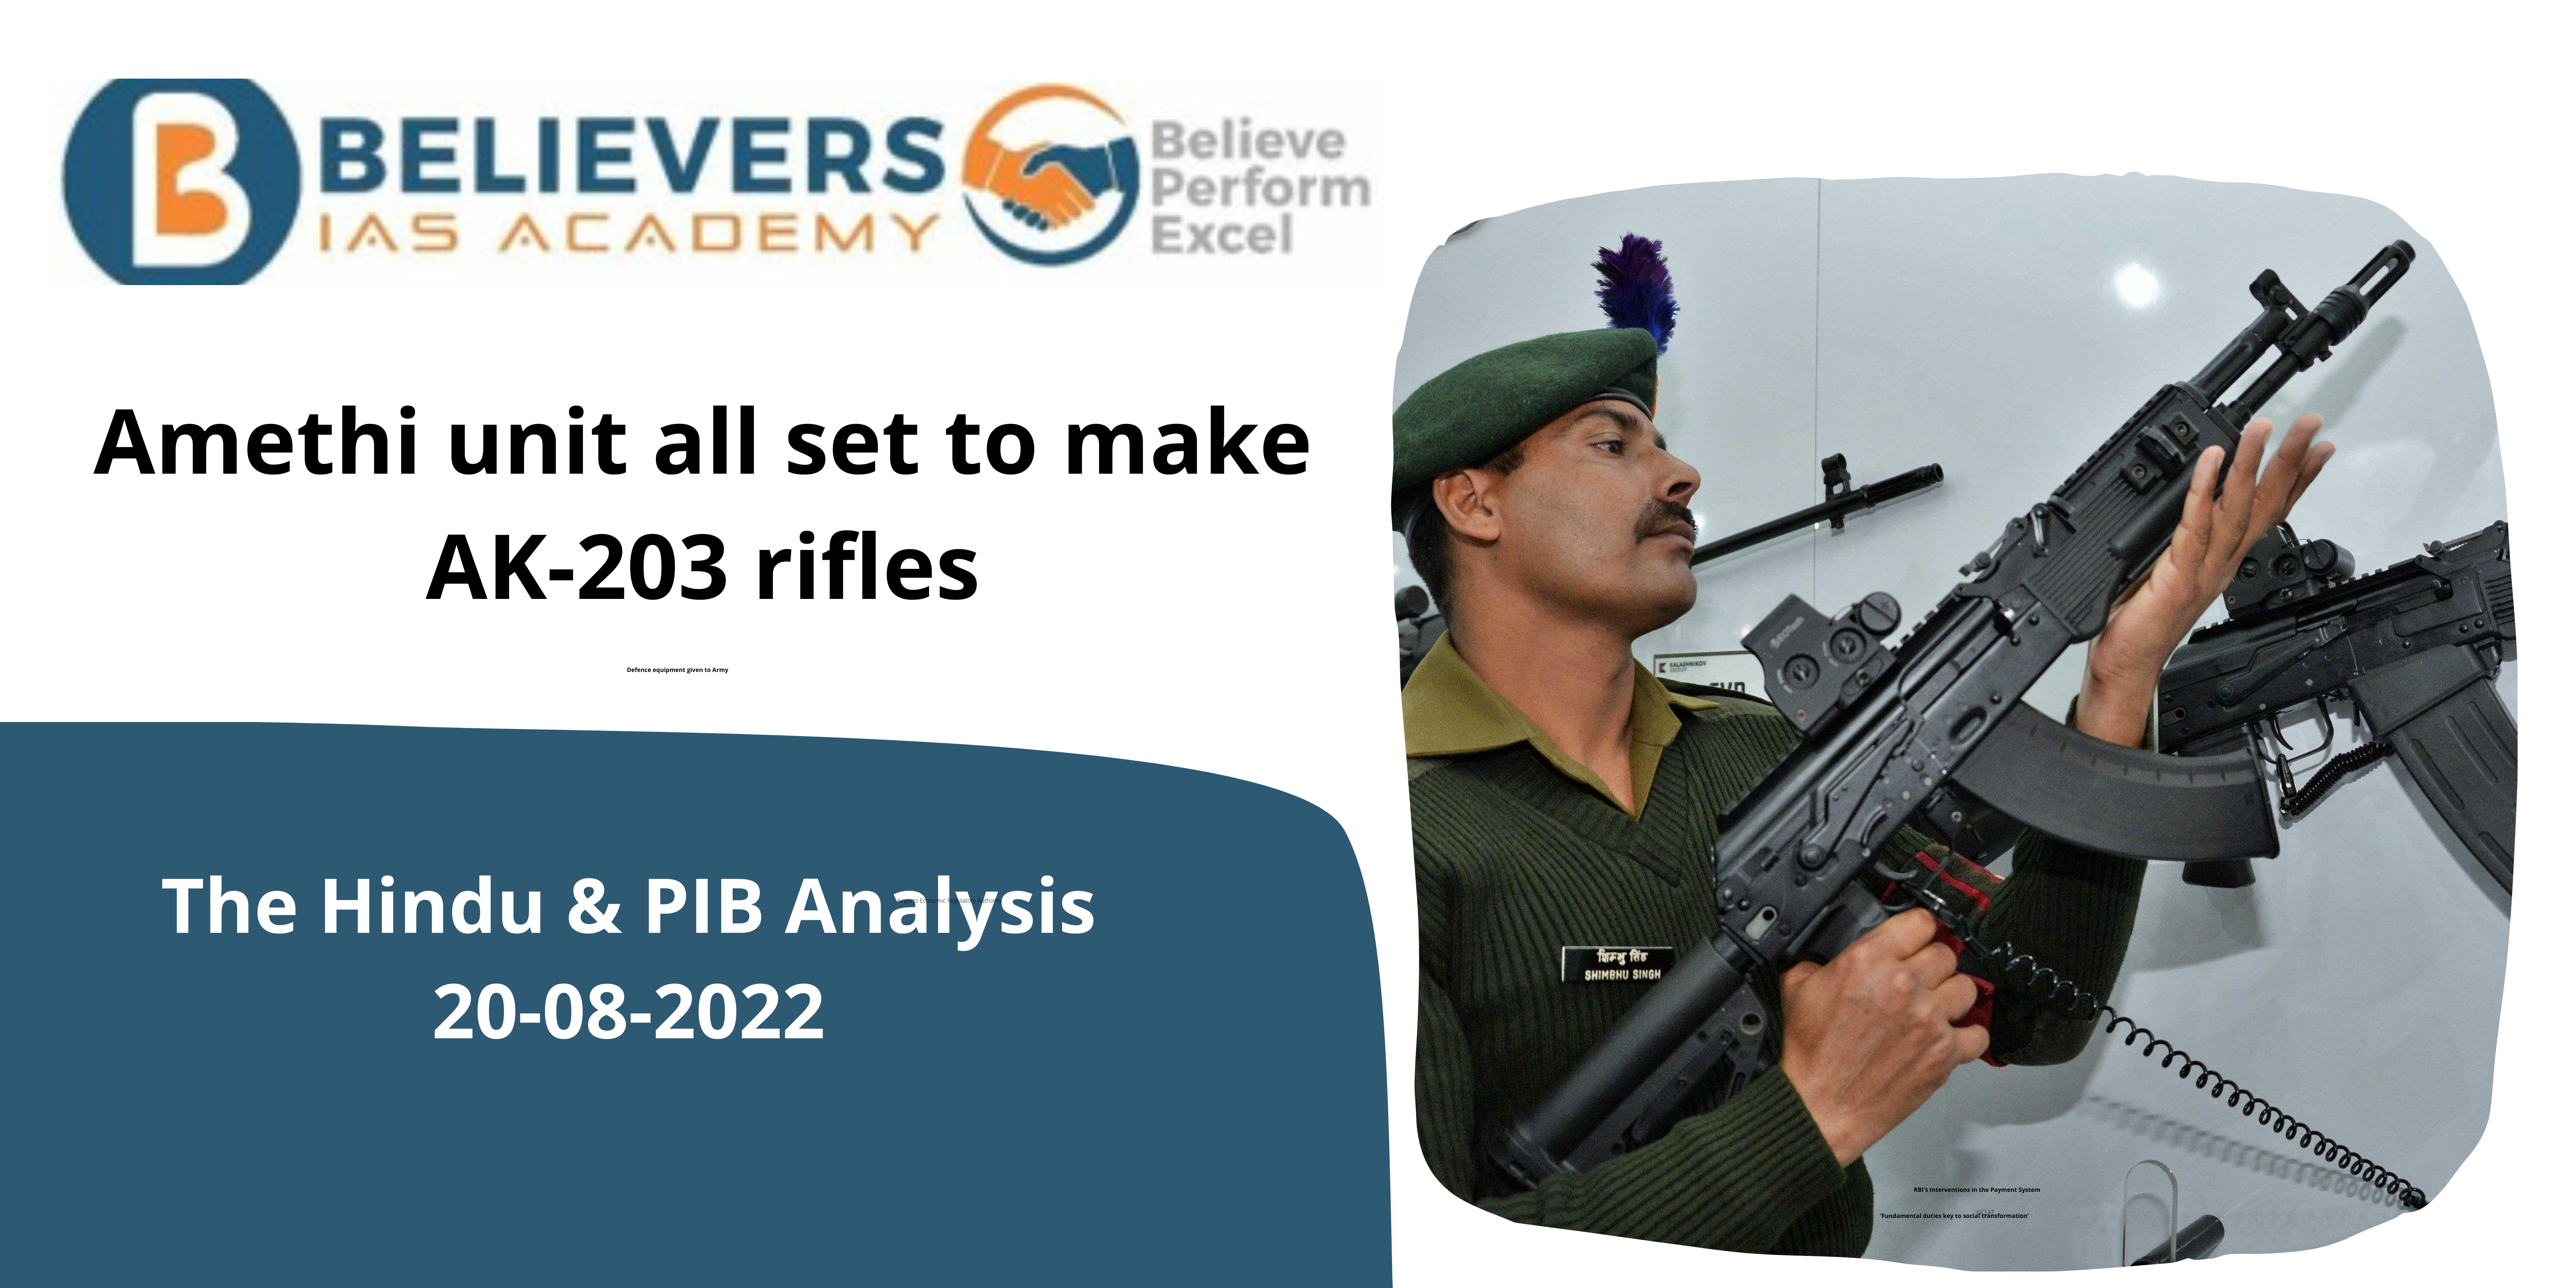 Amethi unit all set to make AK-203 rifles